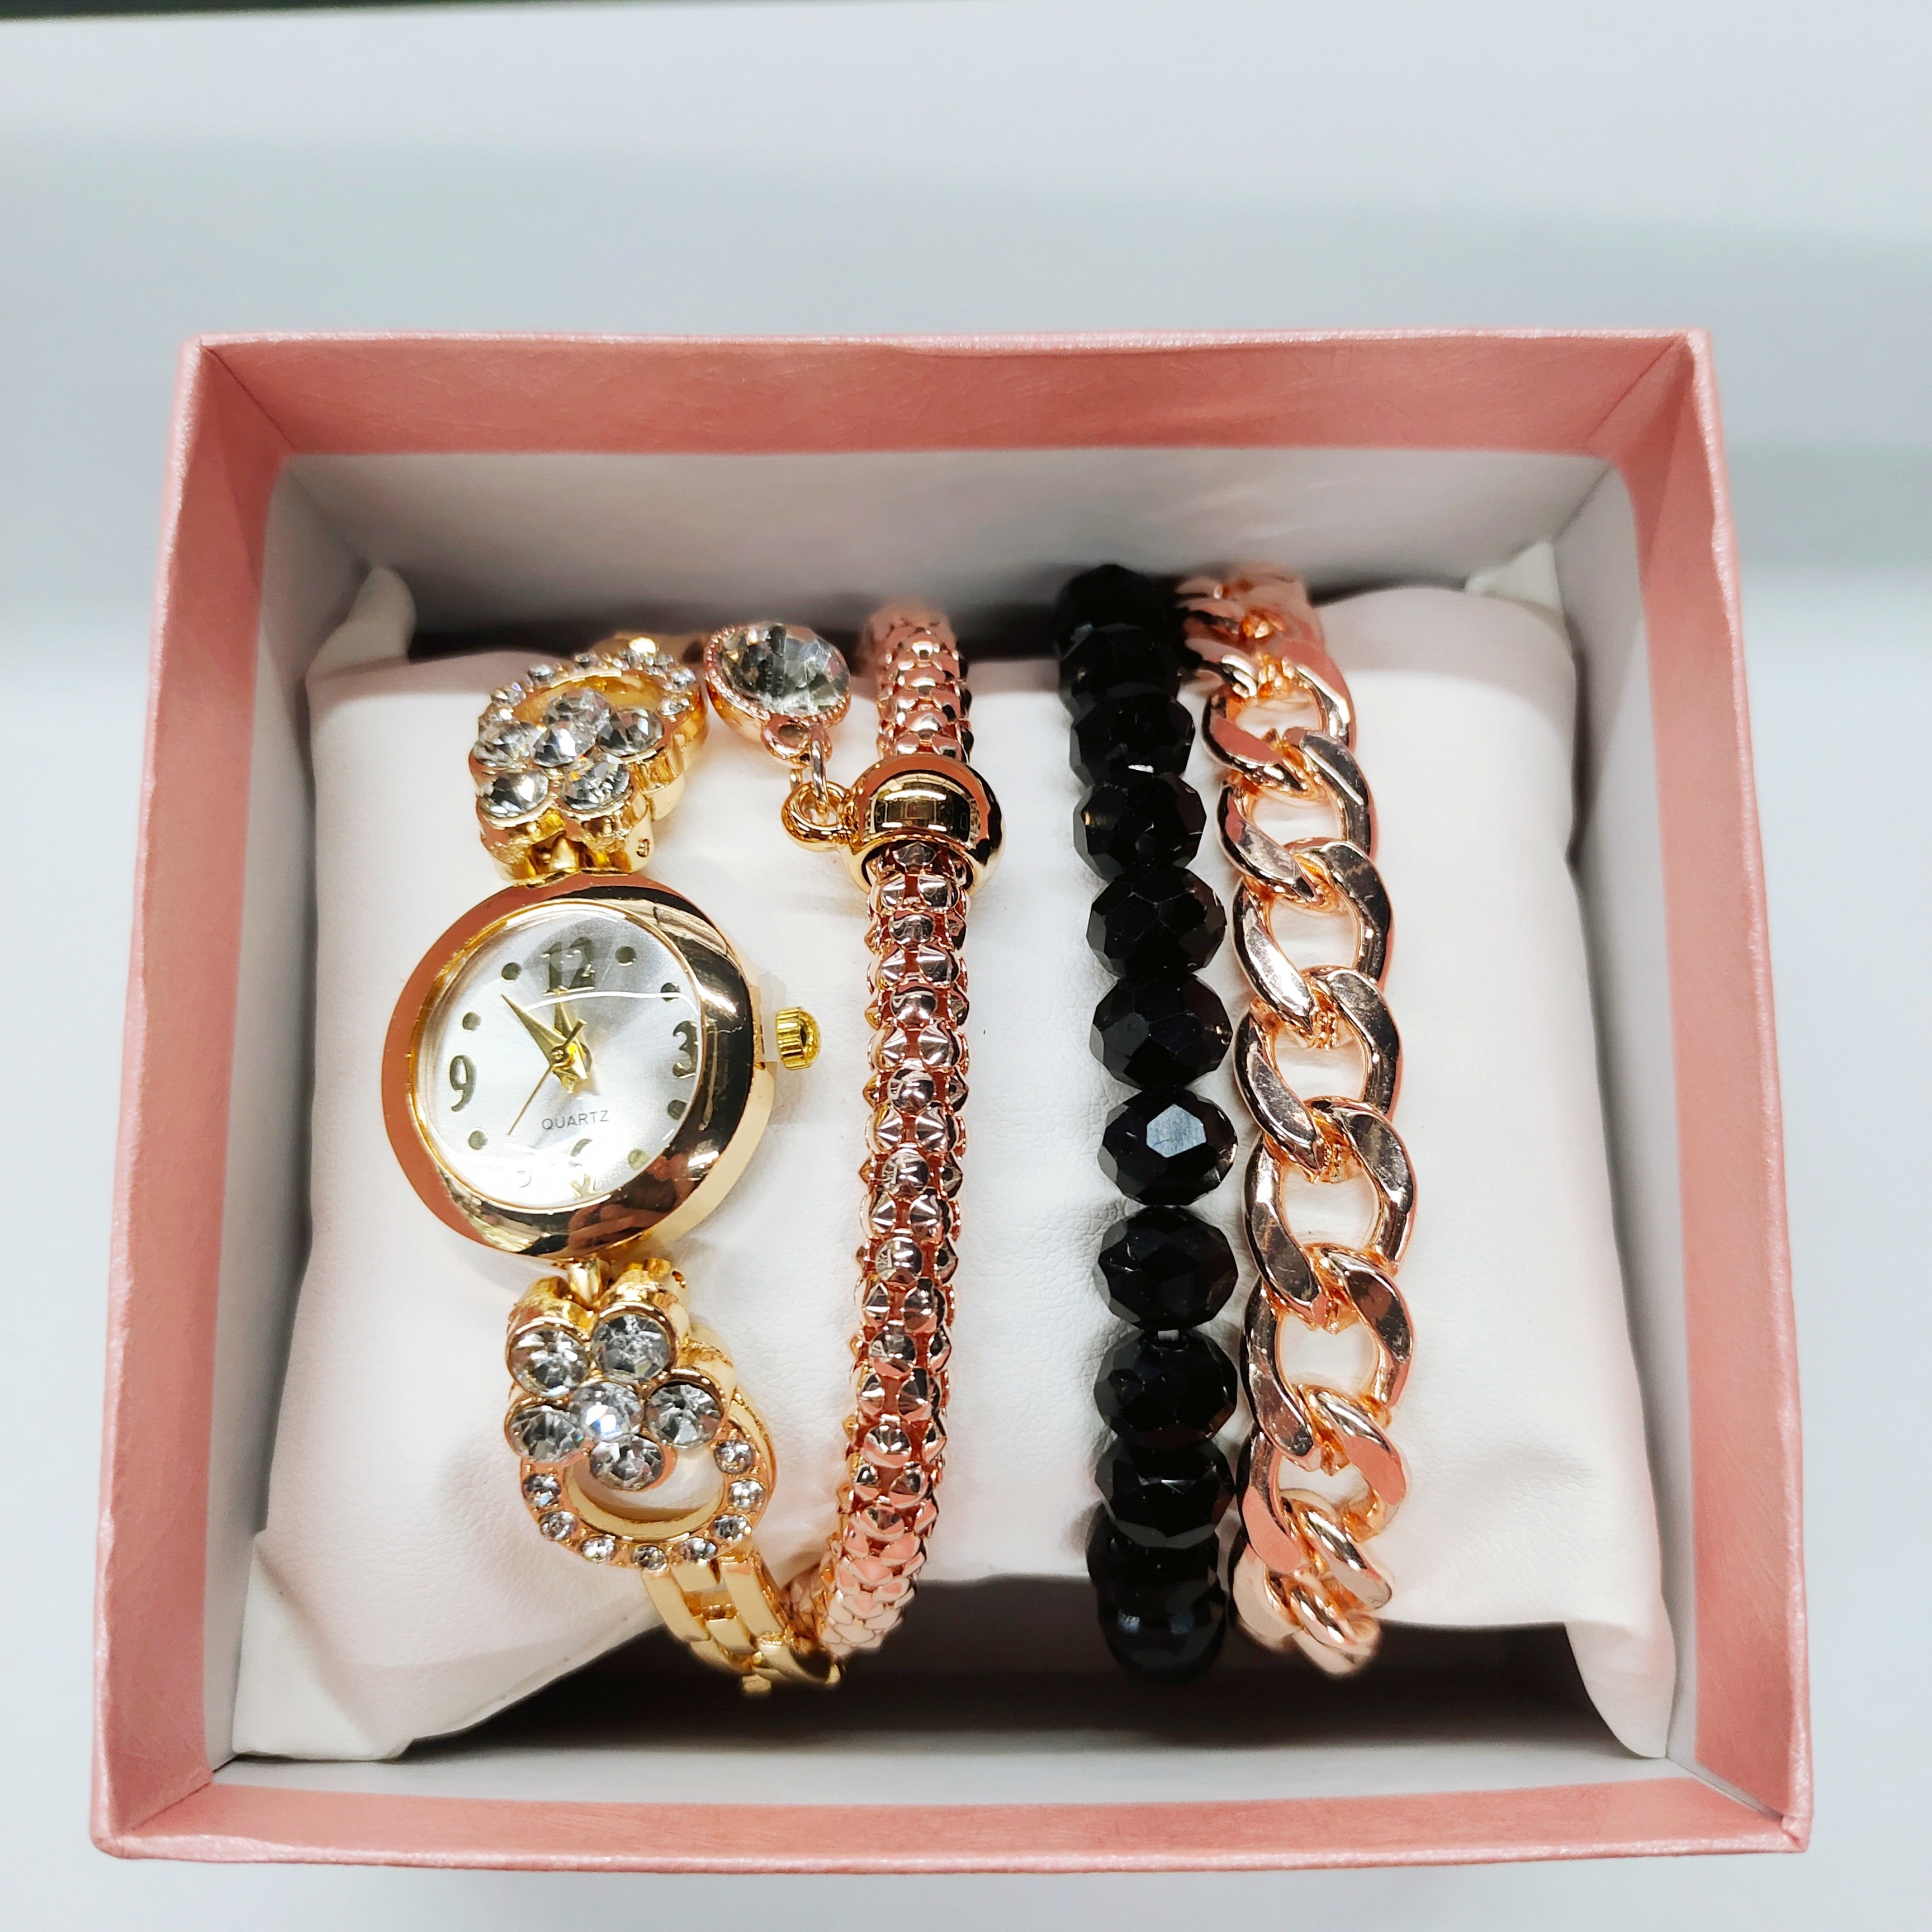 新款热销手链表时尚爆款手表手镯礼品4件套饰品套装女士石英手表详情3